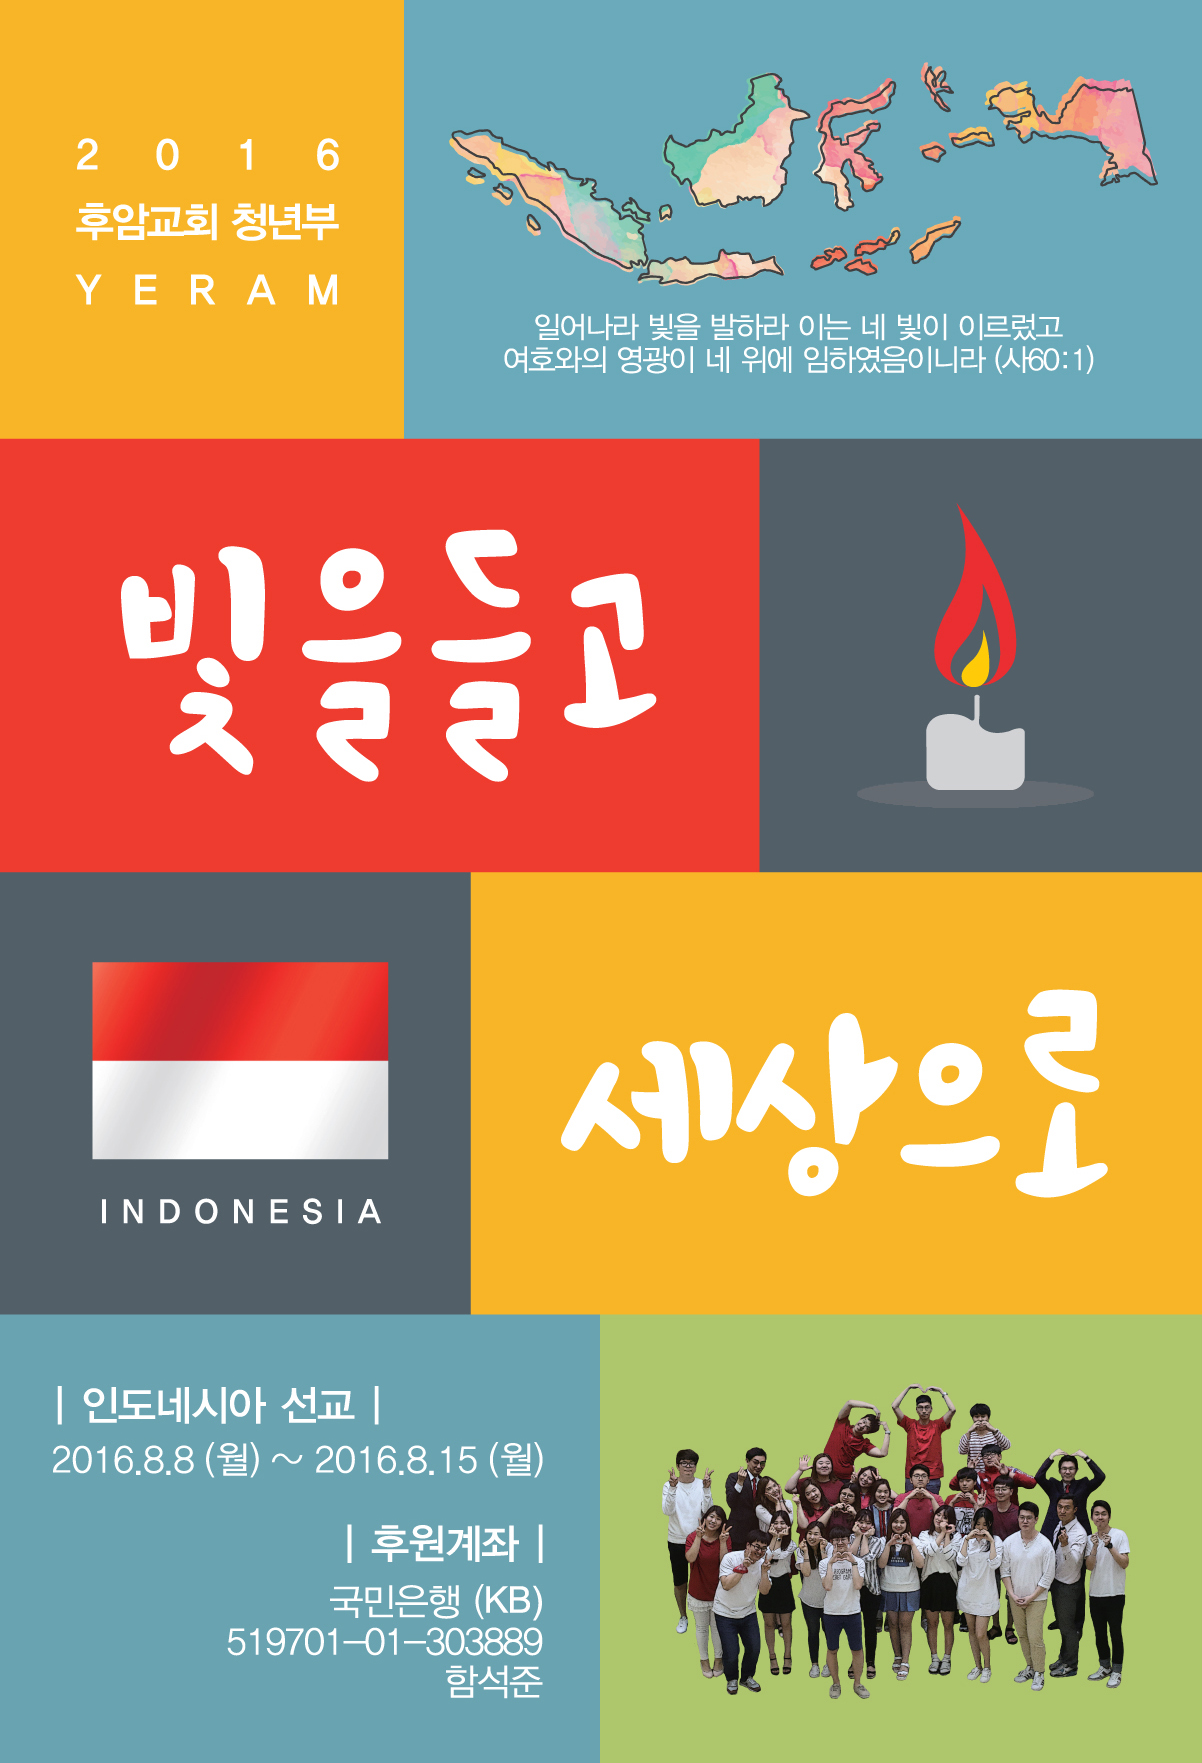 기도엽서.jpg : 2016 인도네시아 단기선교 포스터 및 기도엽서